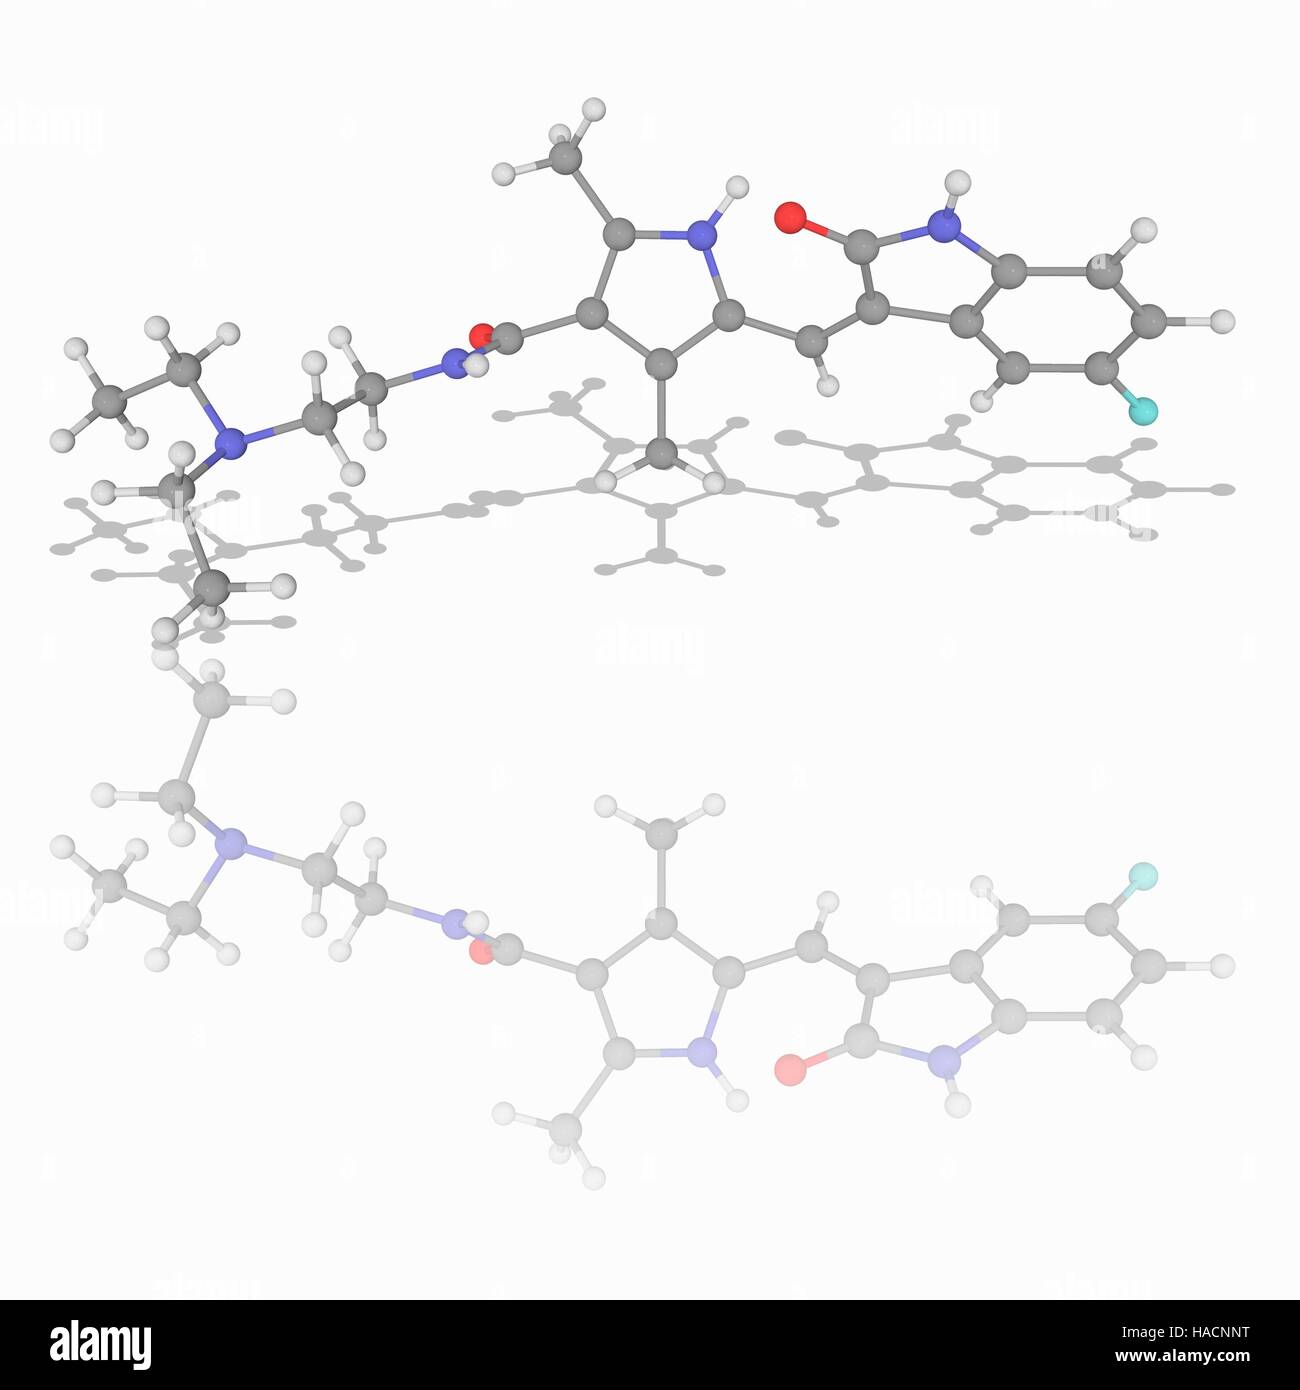 Sunitinib. Molekulares Modell des Medikament Sunitinib (C22. H27. F.N4. O2), ein Rezeptor Tyrosin-Kinase-Inhibitor zur Behandlung von Nierenzellkarzinomen und Imatinib-resistente gastrointestinalen Stromatumoren Tumoren. Atome als Kugeln dargestellt werden und sind farblich gekennzeichnet: Kohlenstoff (grau), Wasserstoff (weiß), Stickstoff (blau), Sauerstoff (rot) und Fluor (Cyan). Abbildung. Stockfoto